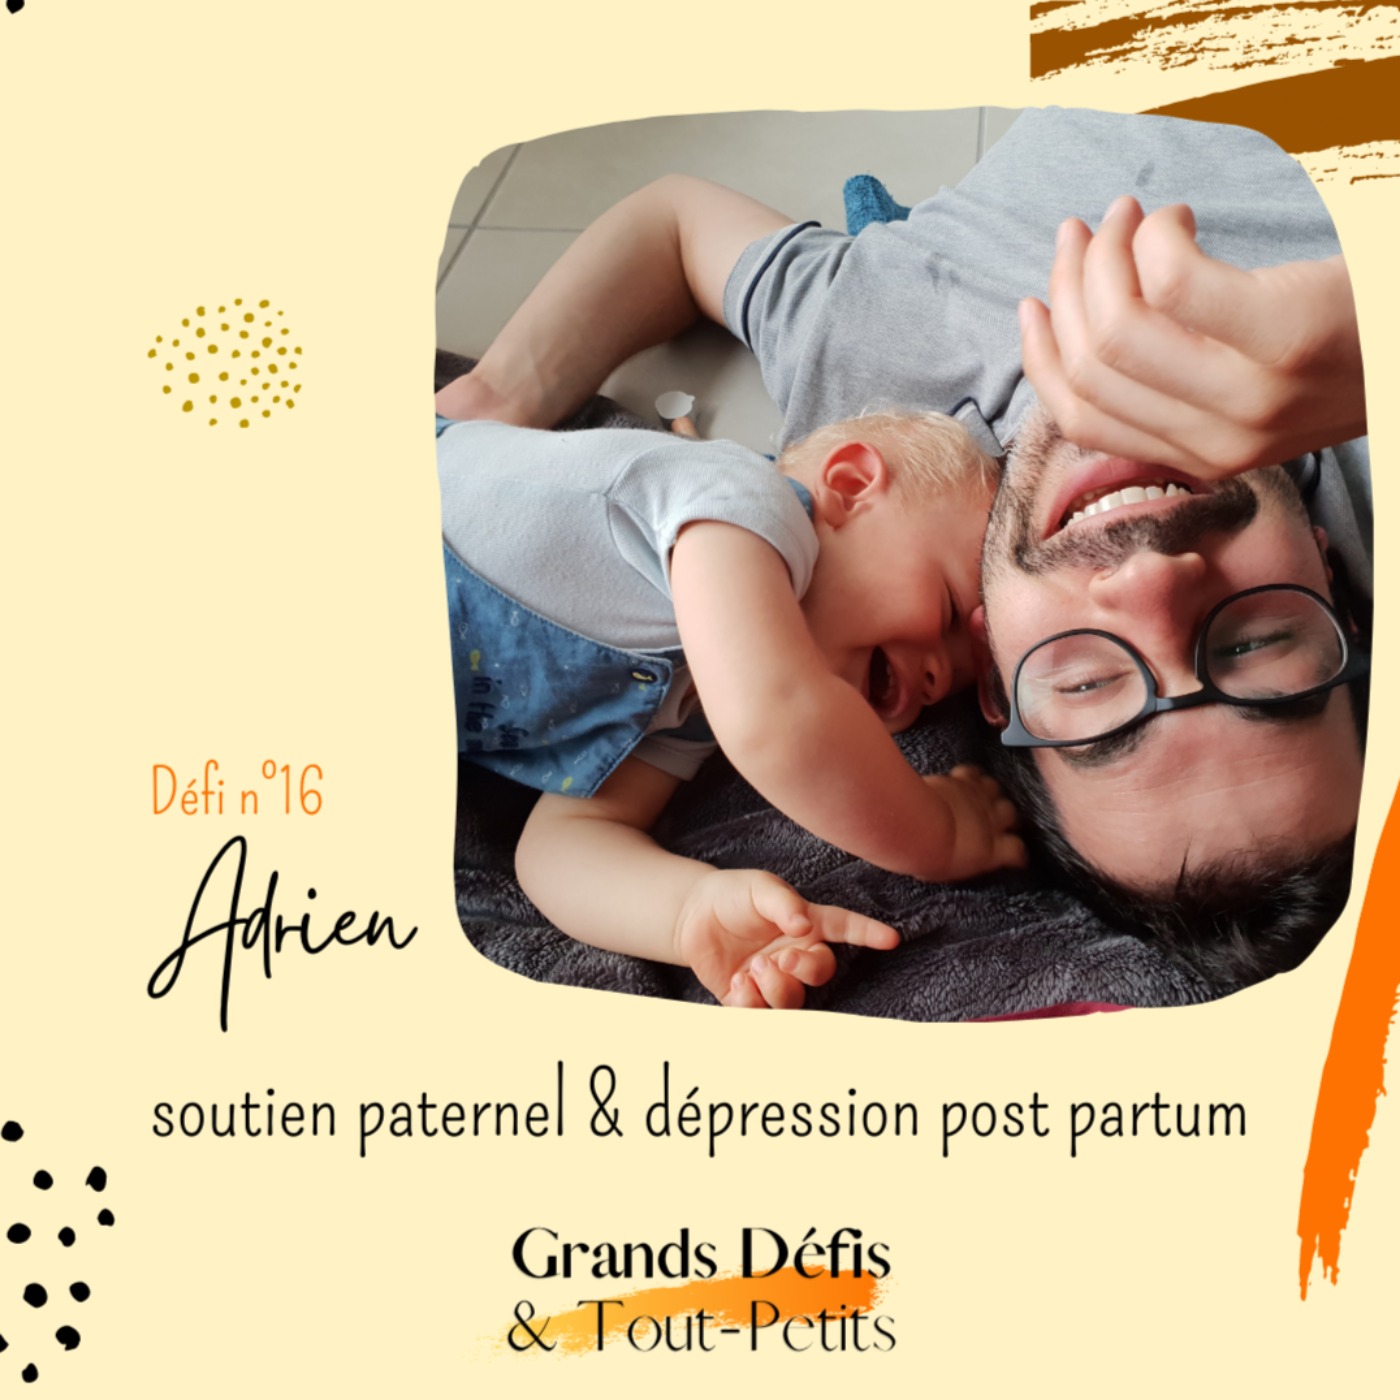 Défi n°16 : Adrien, soutien paternel & dépression post partum